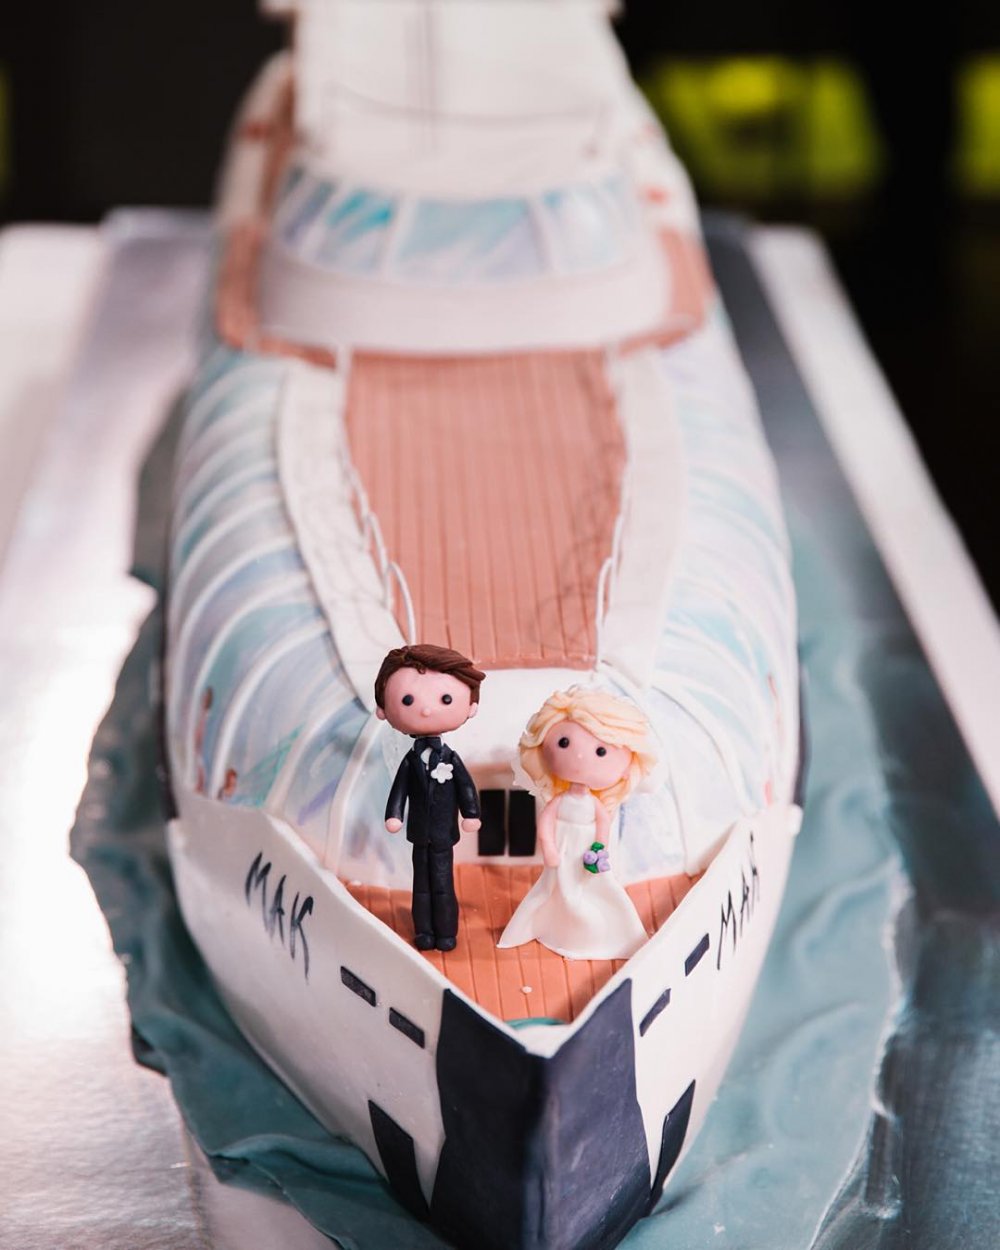 Свадебный торт в виде яхты  кондитерской "Колесо времени".
Эксклюзивный свадебный торт на заказ - исключительно натуральный, авторский декор. На дегустации 15 начинок на выбор. Доставка. Заказ на сайте нашей кондитерской.